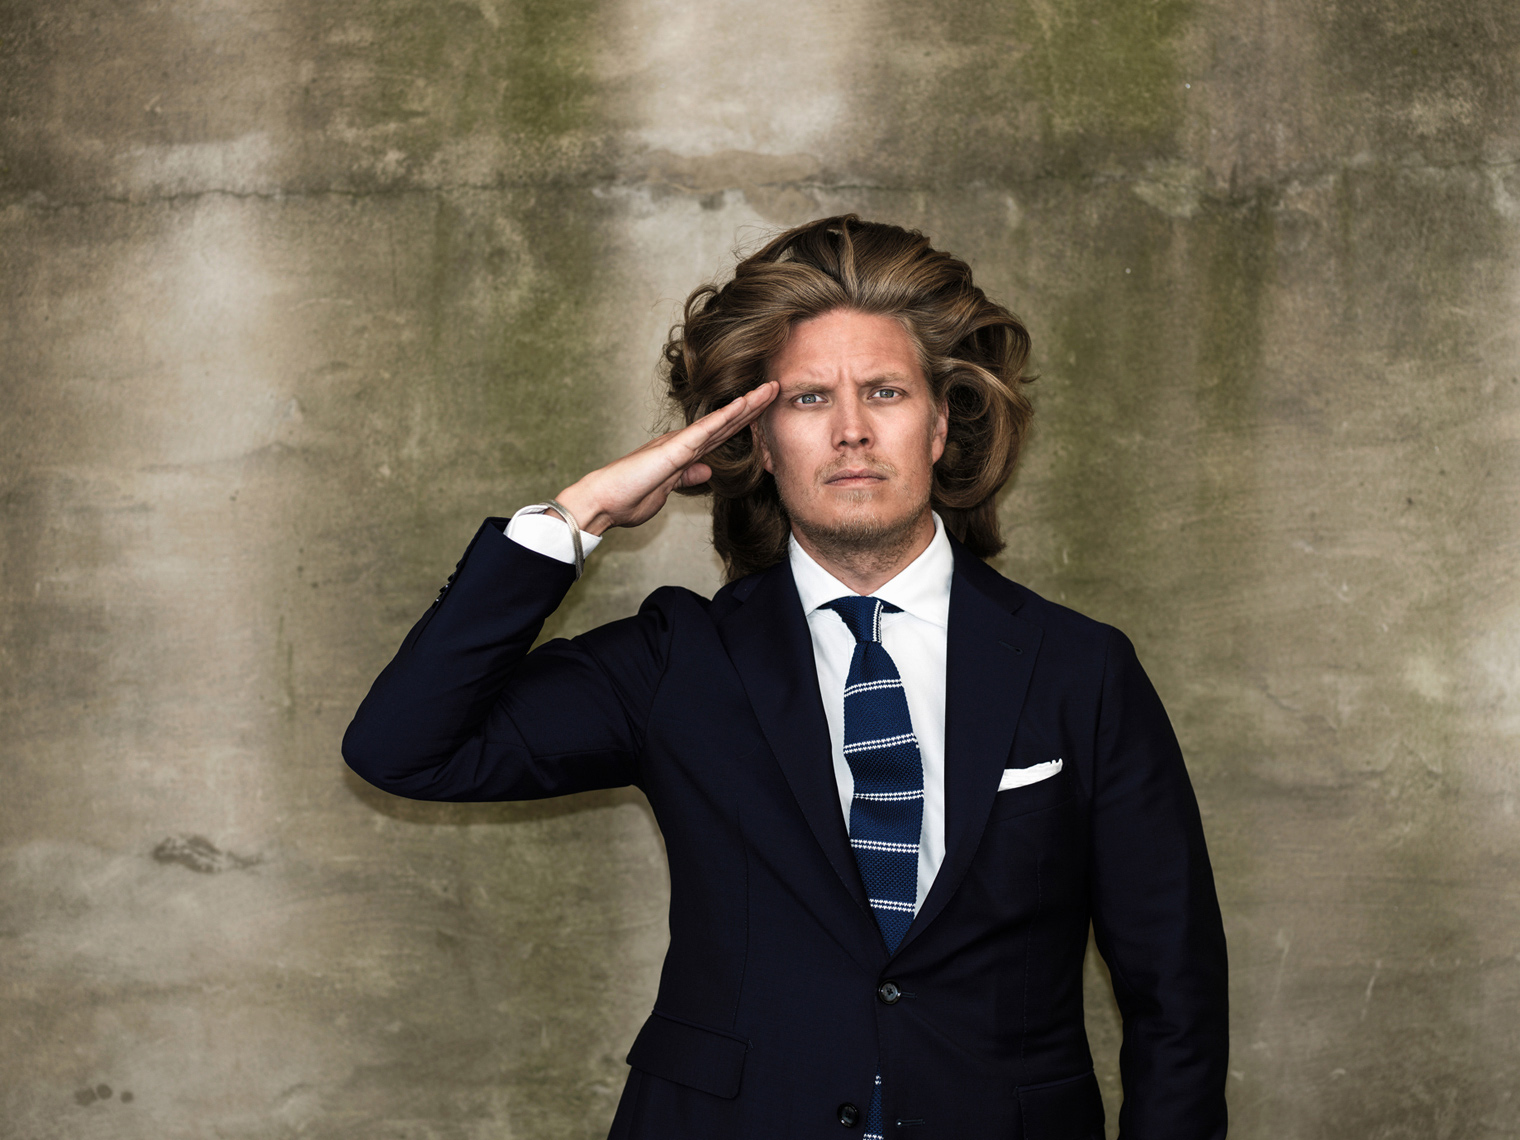 Promo Pictures for YLE Kioski – Kaarle Hurtig // Photographer: Aki-Pekka Sinikoski